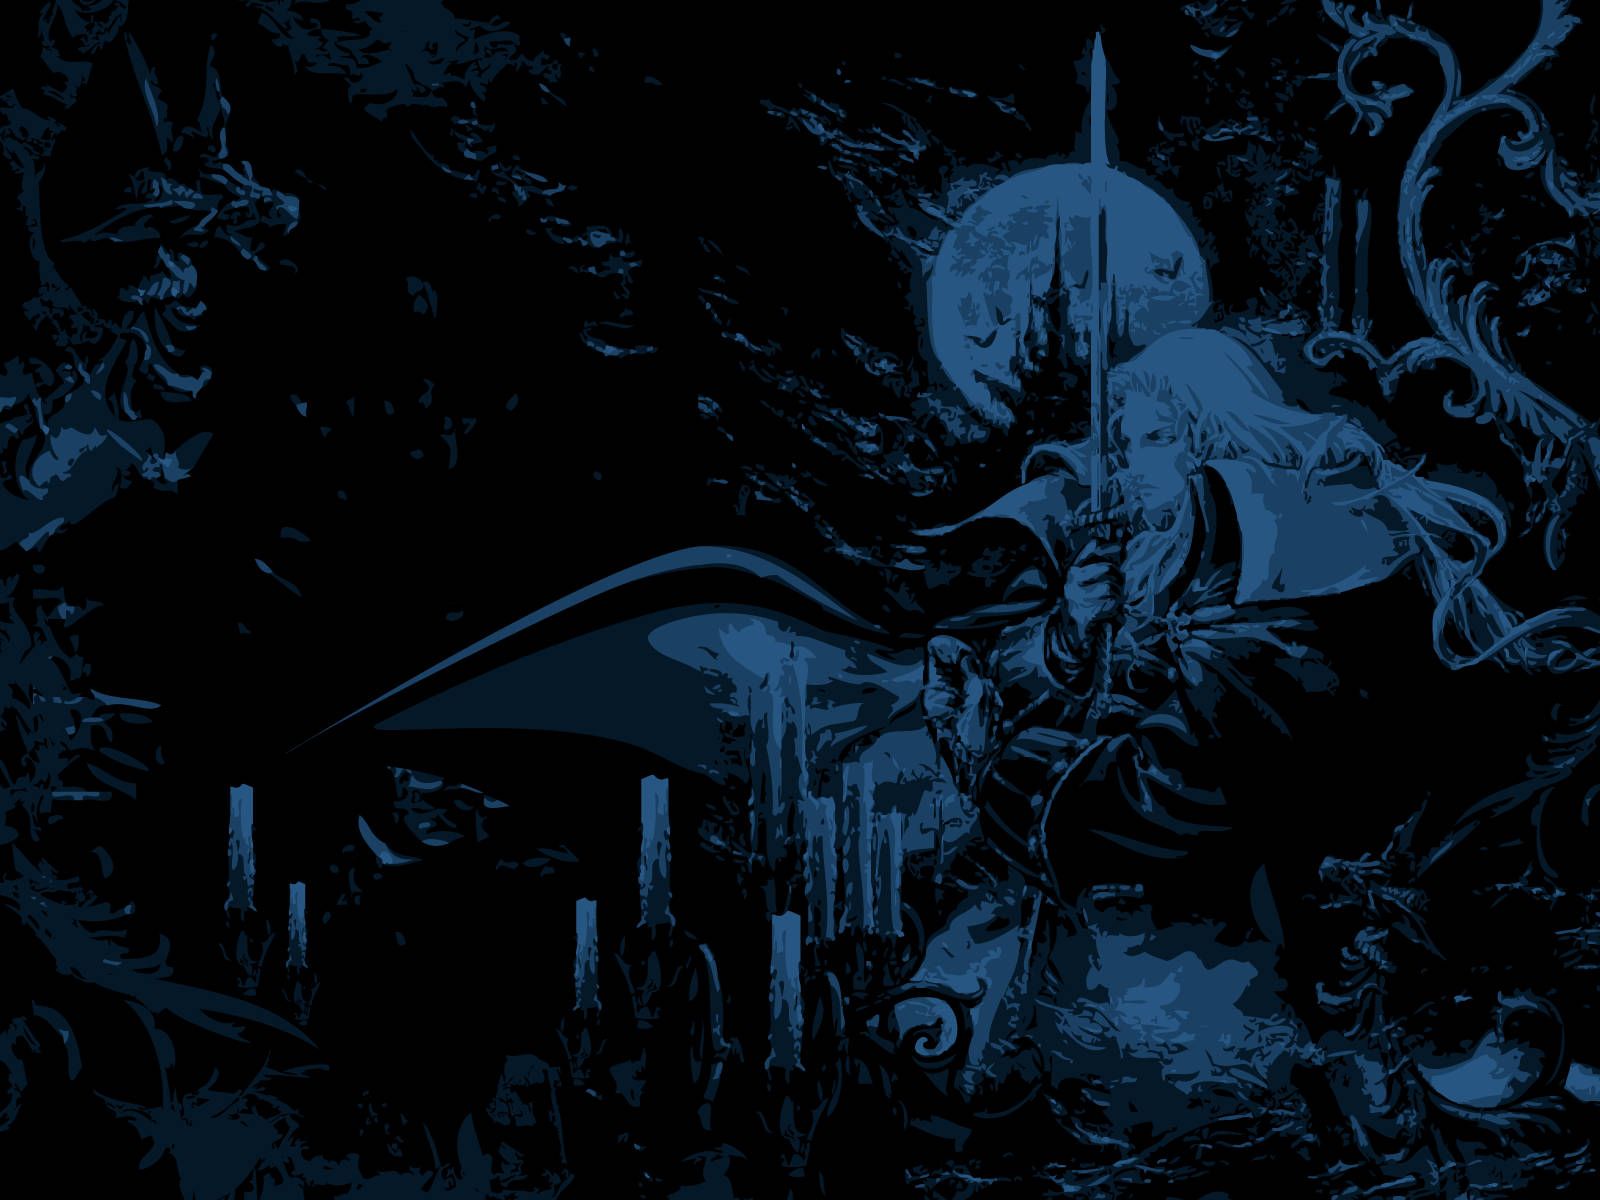  Castlevania Hintergrundbild 1600x1200. Download Alucard vampire hunter of Castlevania: Symphony of the Night Wallpaper